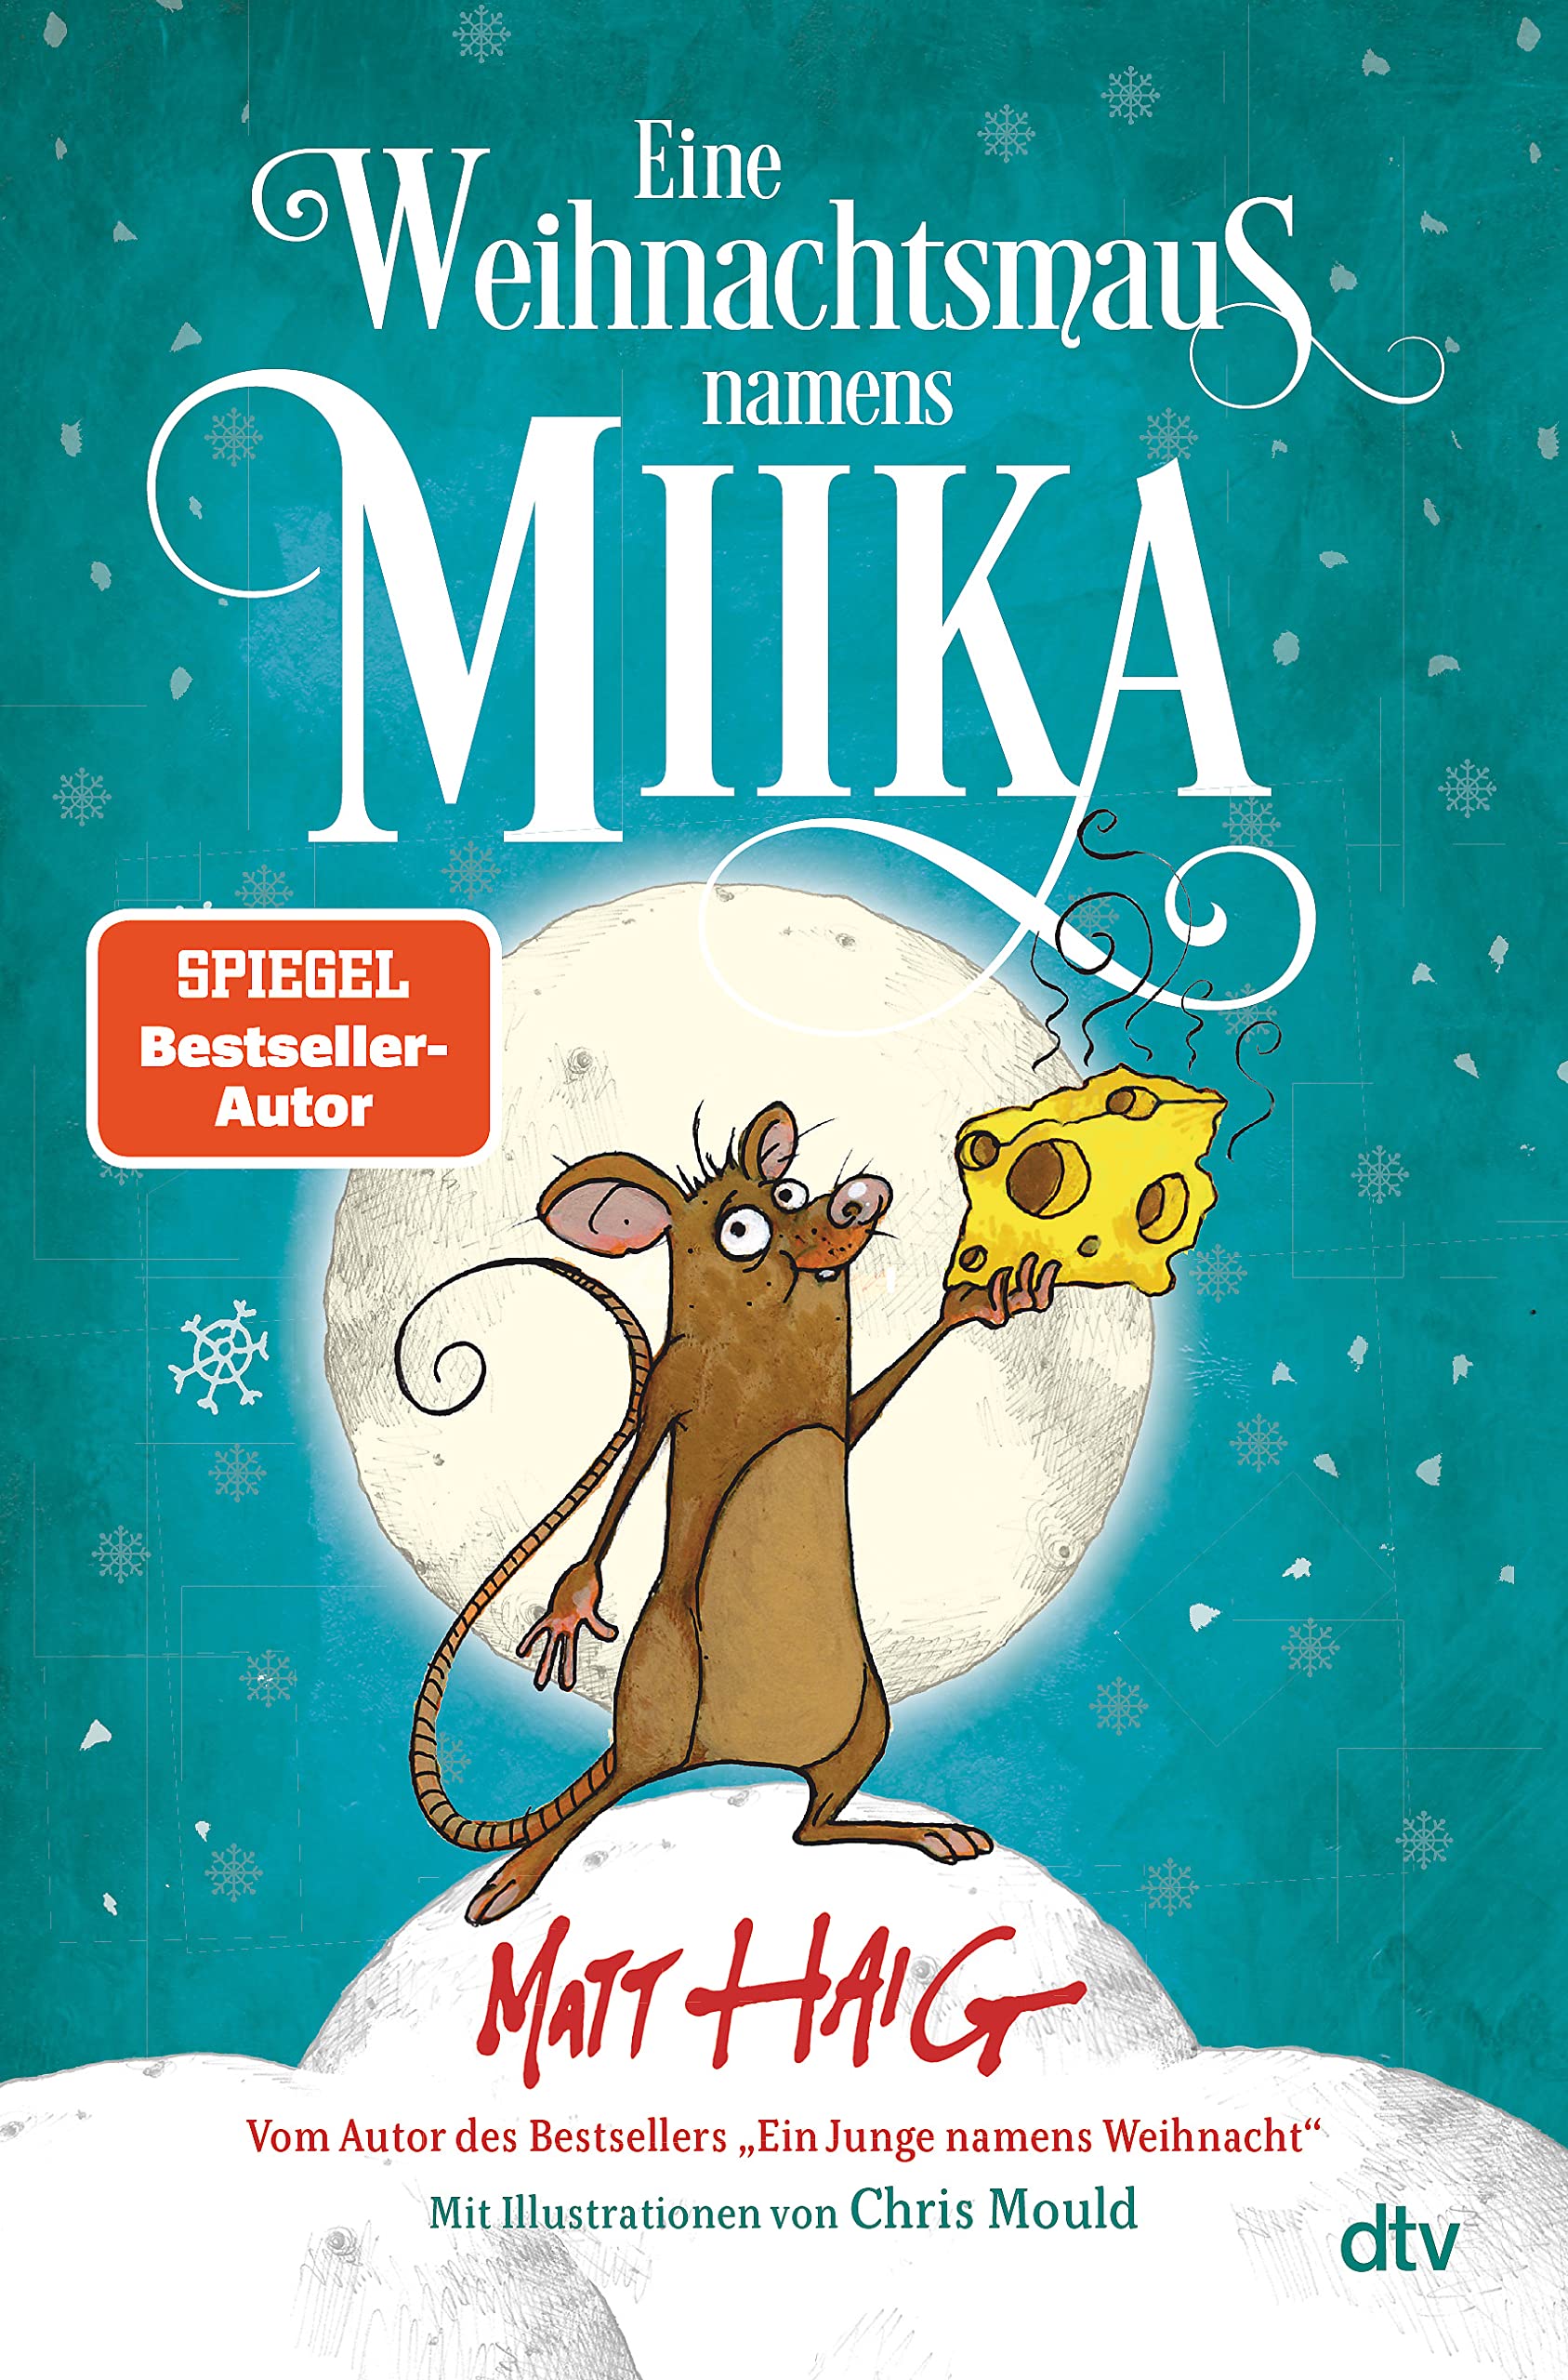 Eine Weihnachtsmaus namens Miika